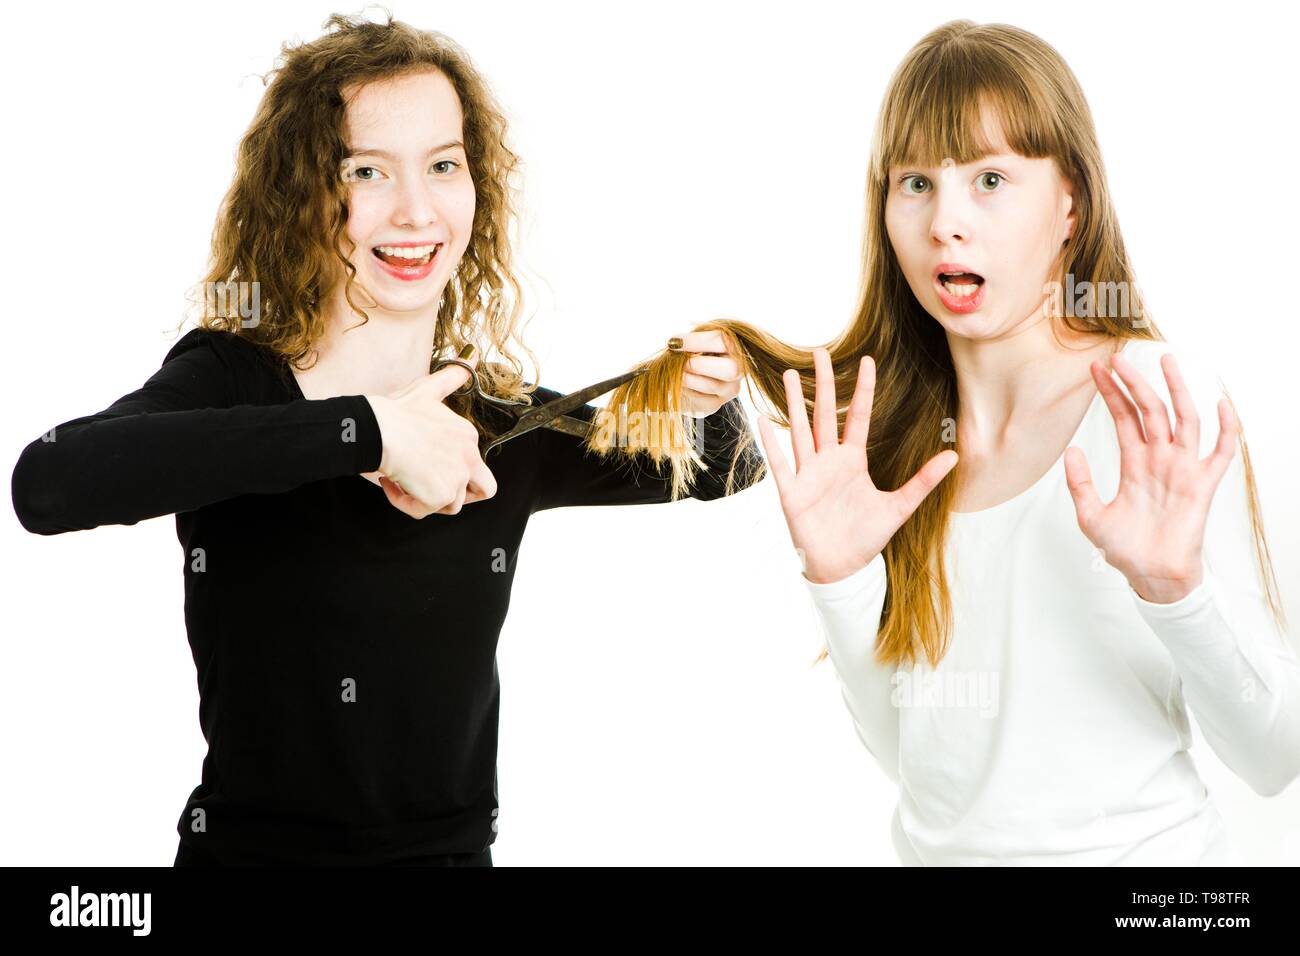 Zwei Mädchen mit blonden Haaren und Schere, man um Haare besser Haarschnitt, den Schnitt, die zweite Macht Geste der widerstehen - junge Friseur-weiß Ba Stockfoto